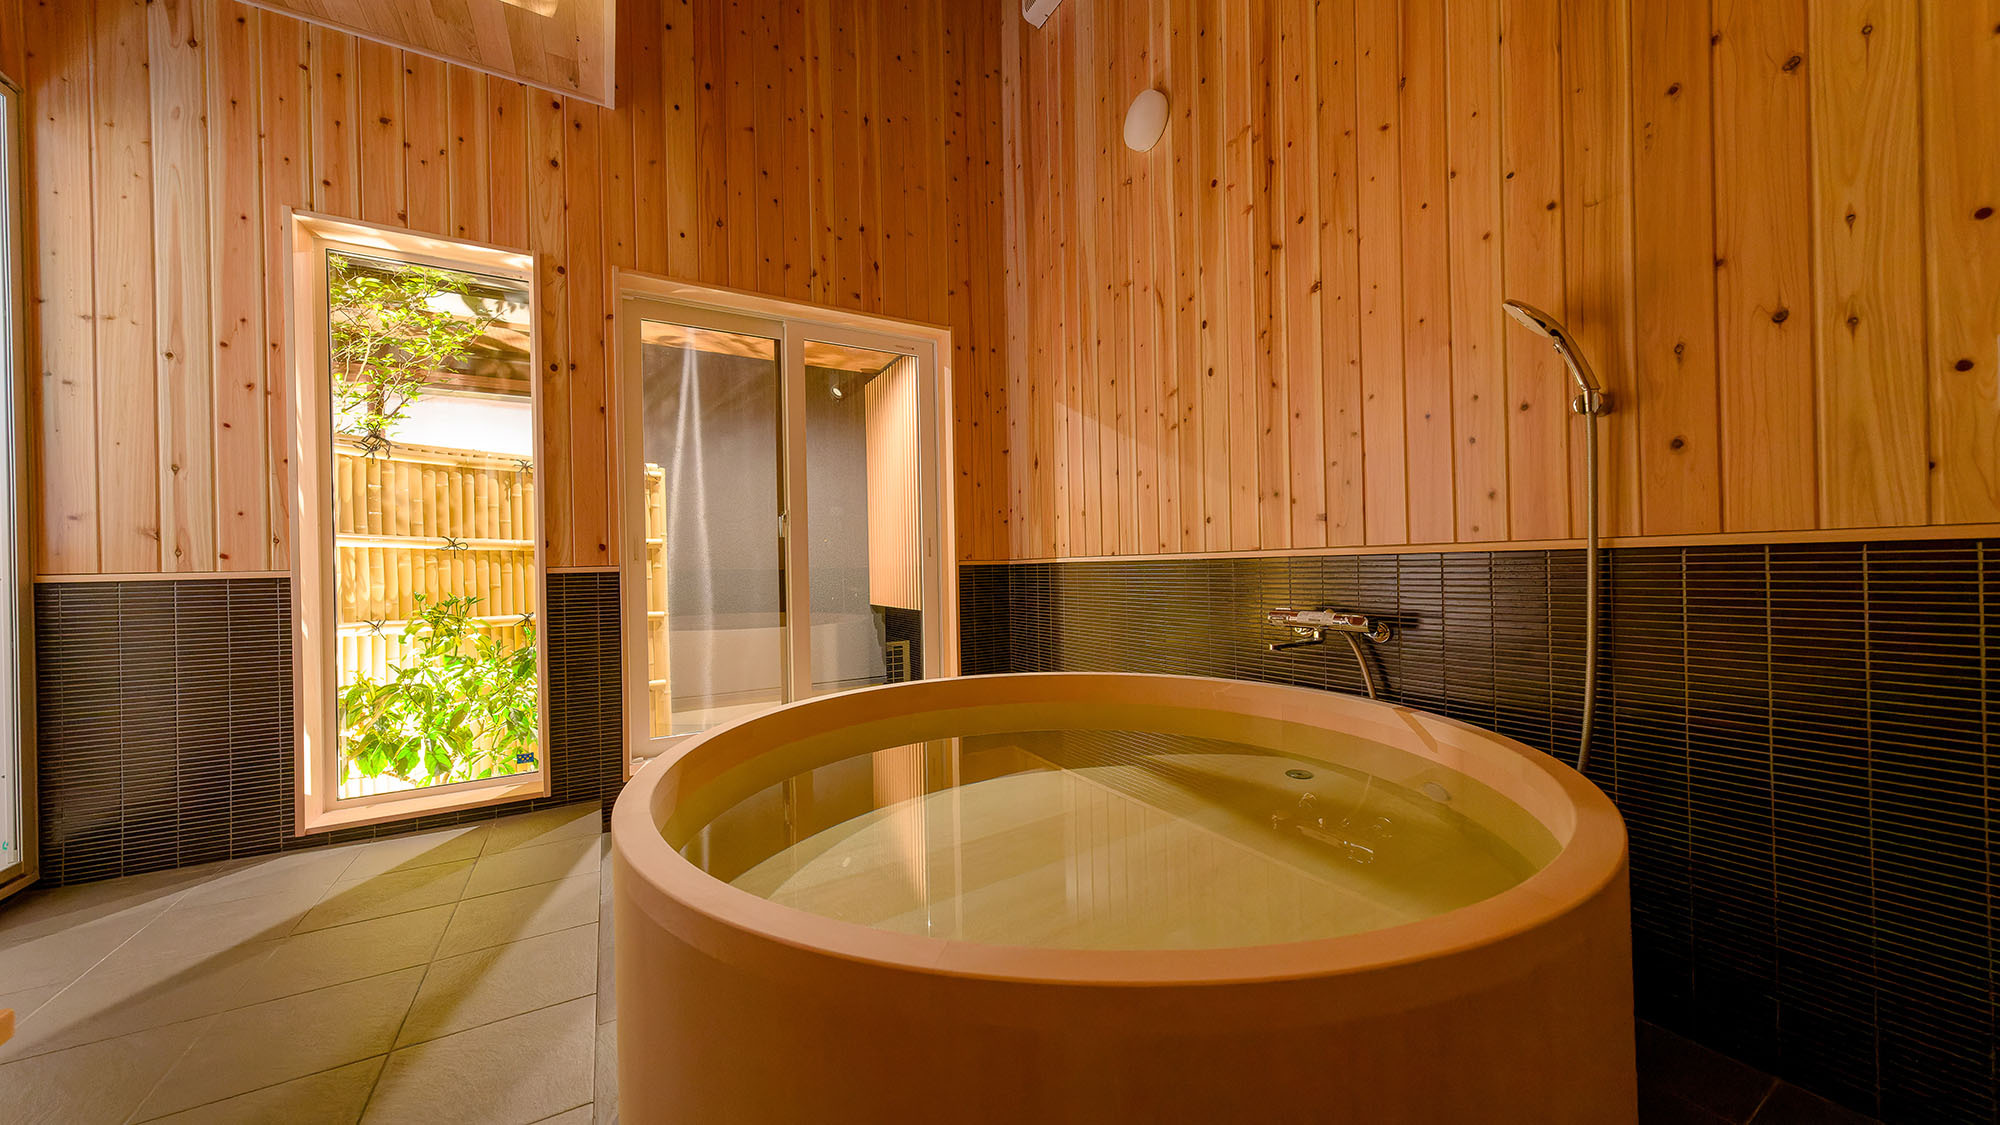 ・【鳳凰館・ヒノキ風呂】中庭と繋がっている半露天風呂タイプの檜風呂